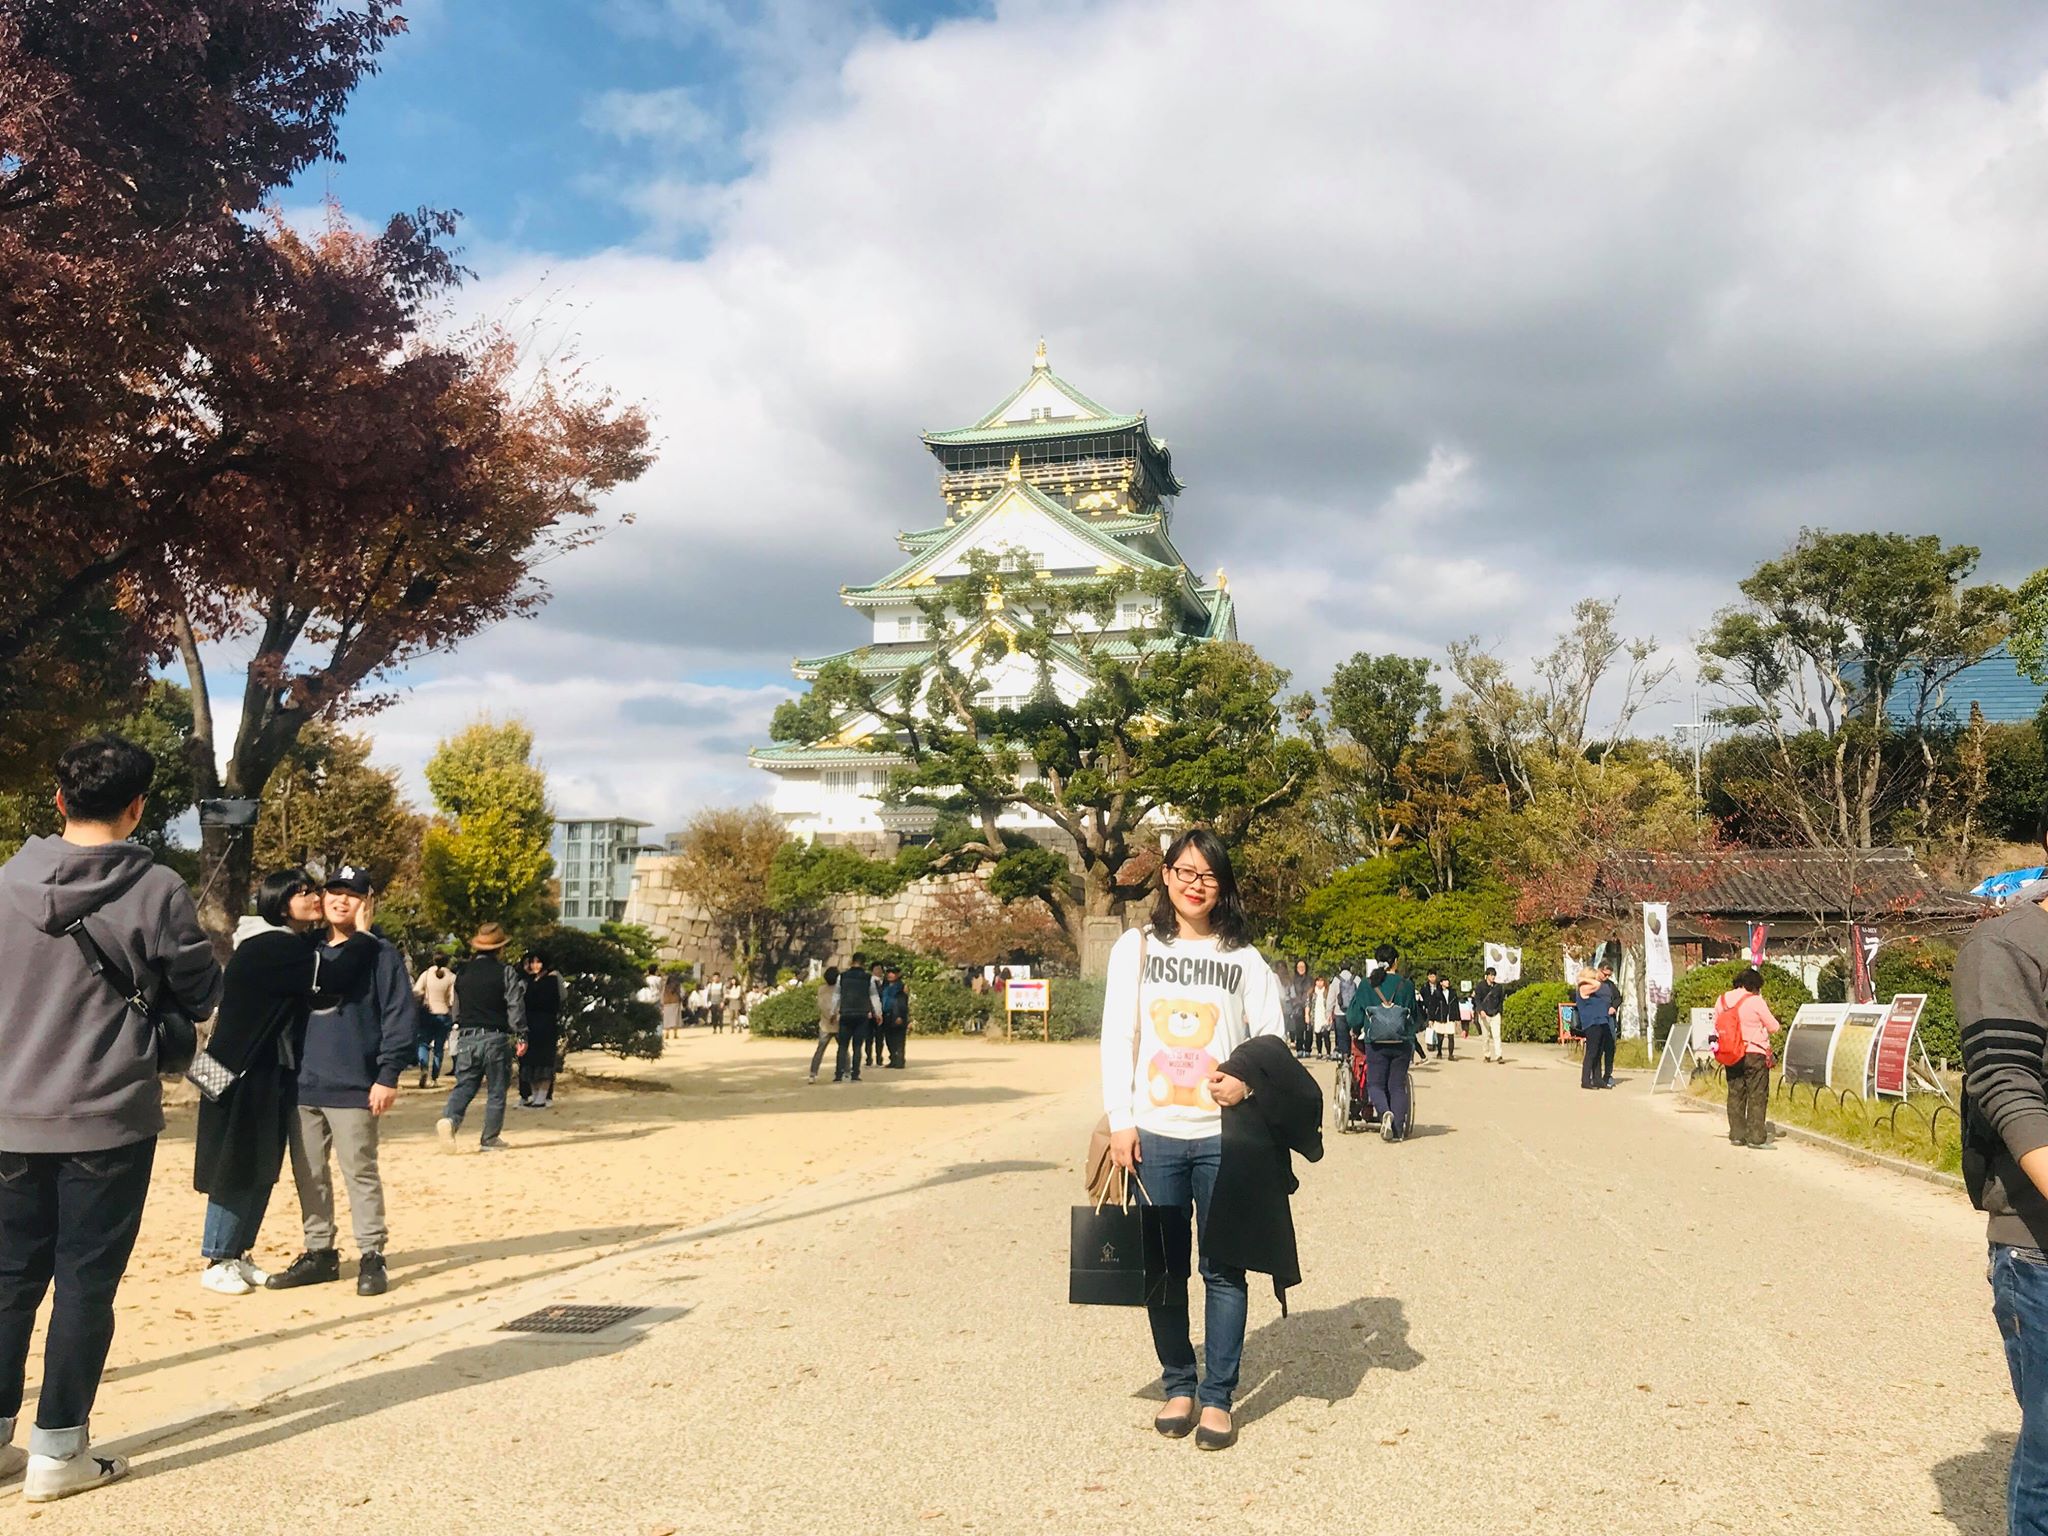 Lâu đài Osaka trong ánh nắng thu, một trong những điểm tham quan hấp dẫn nhất Osaka.